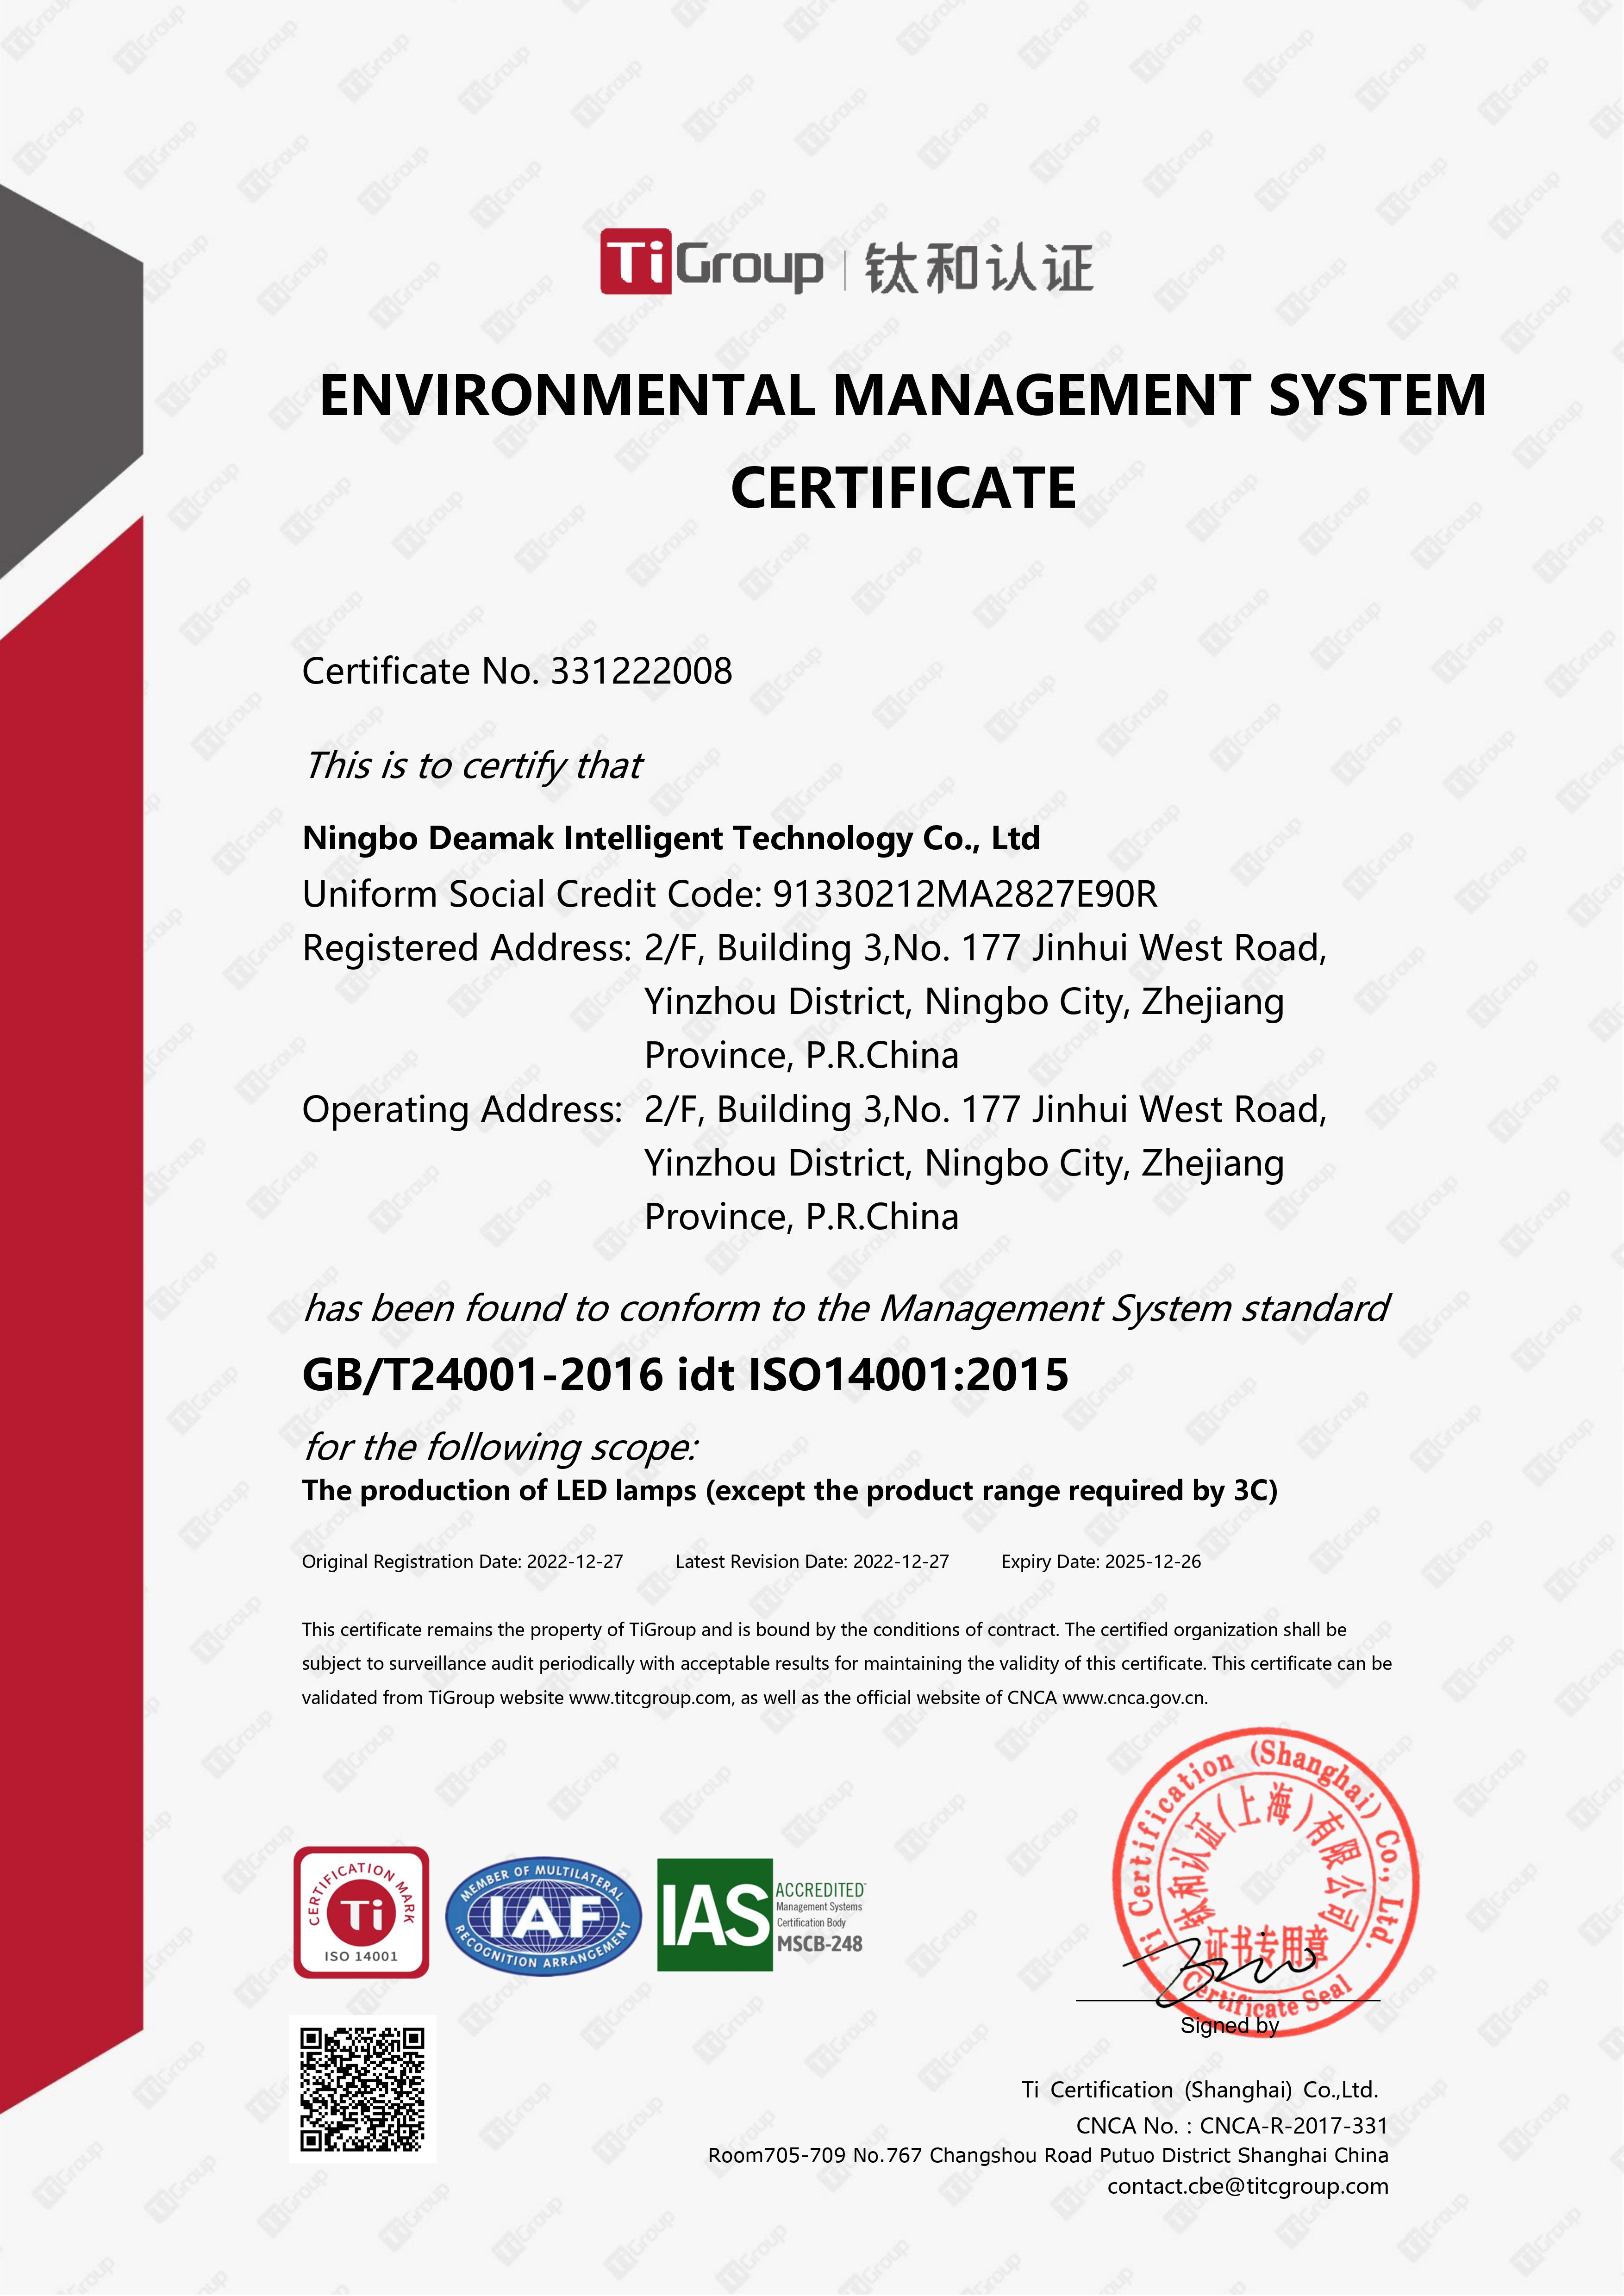 নিংবো ডেমাক ISO14001